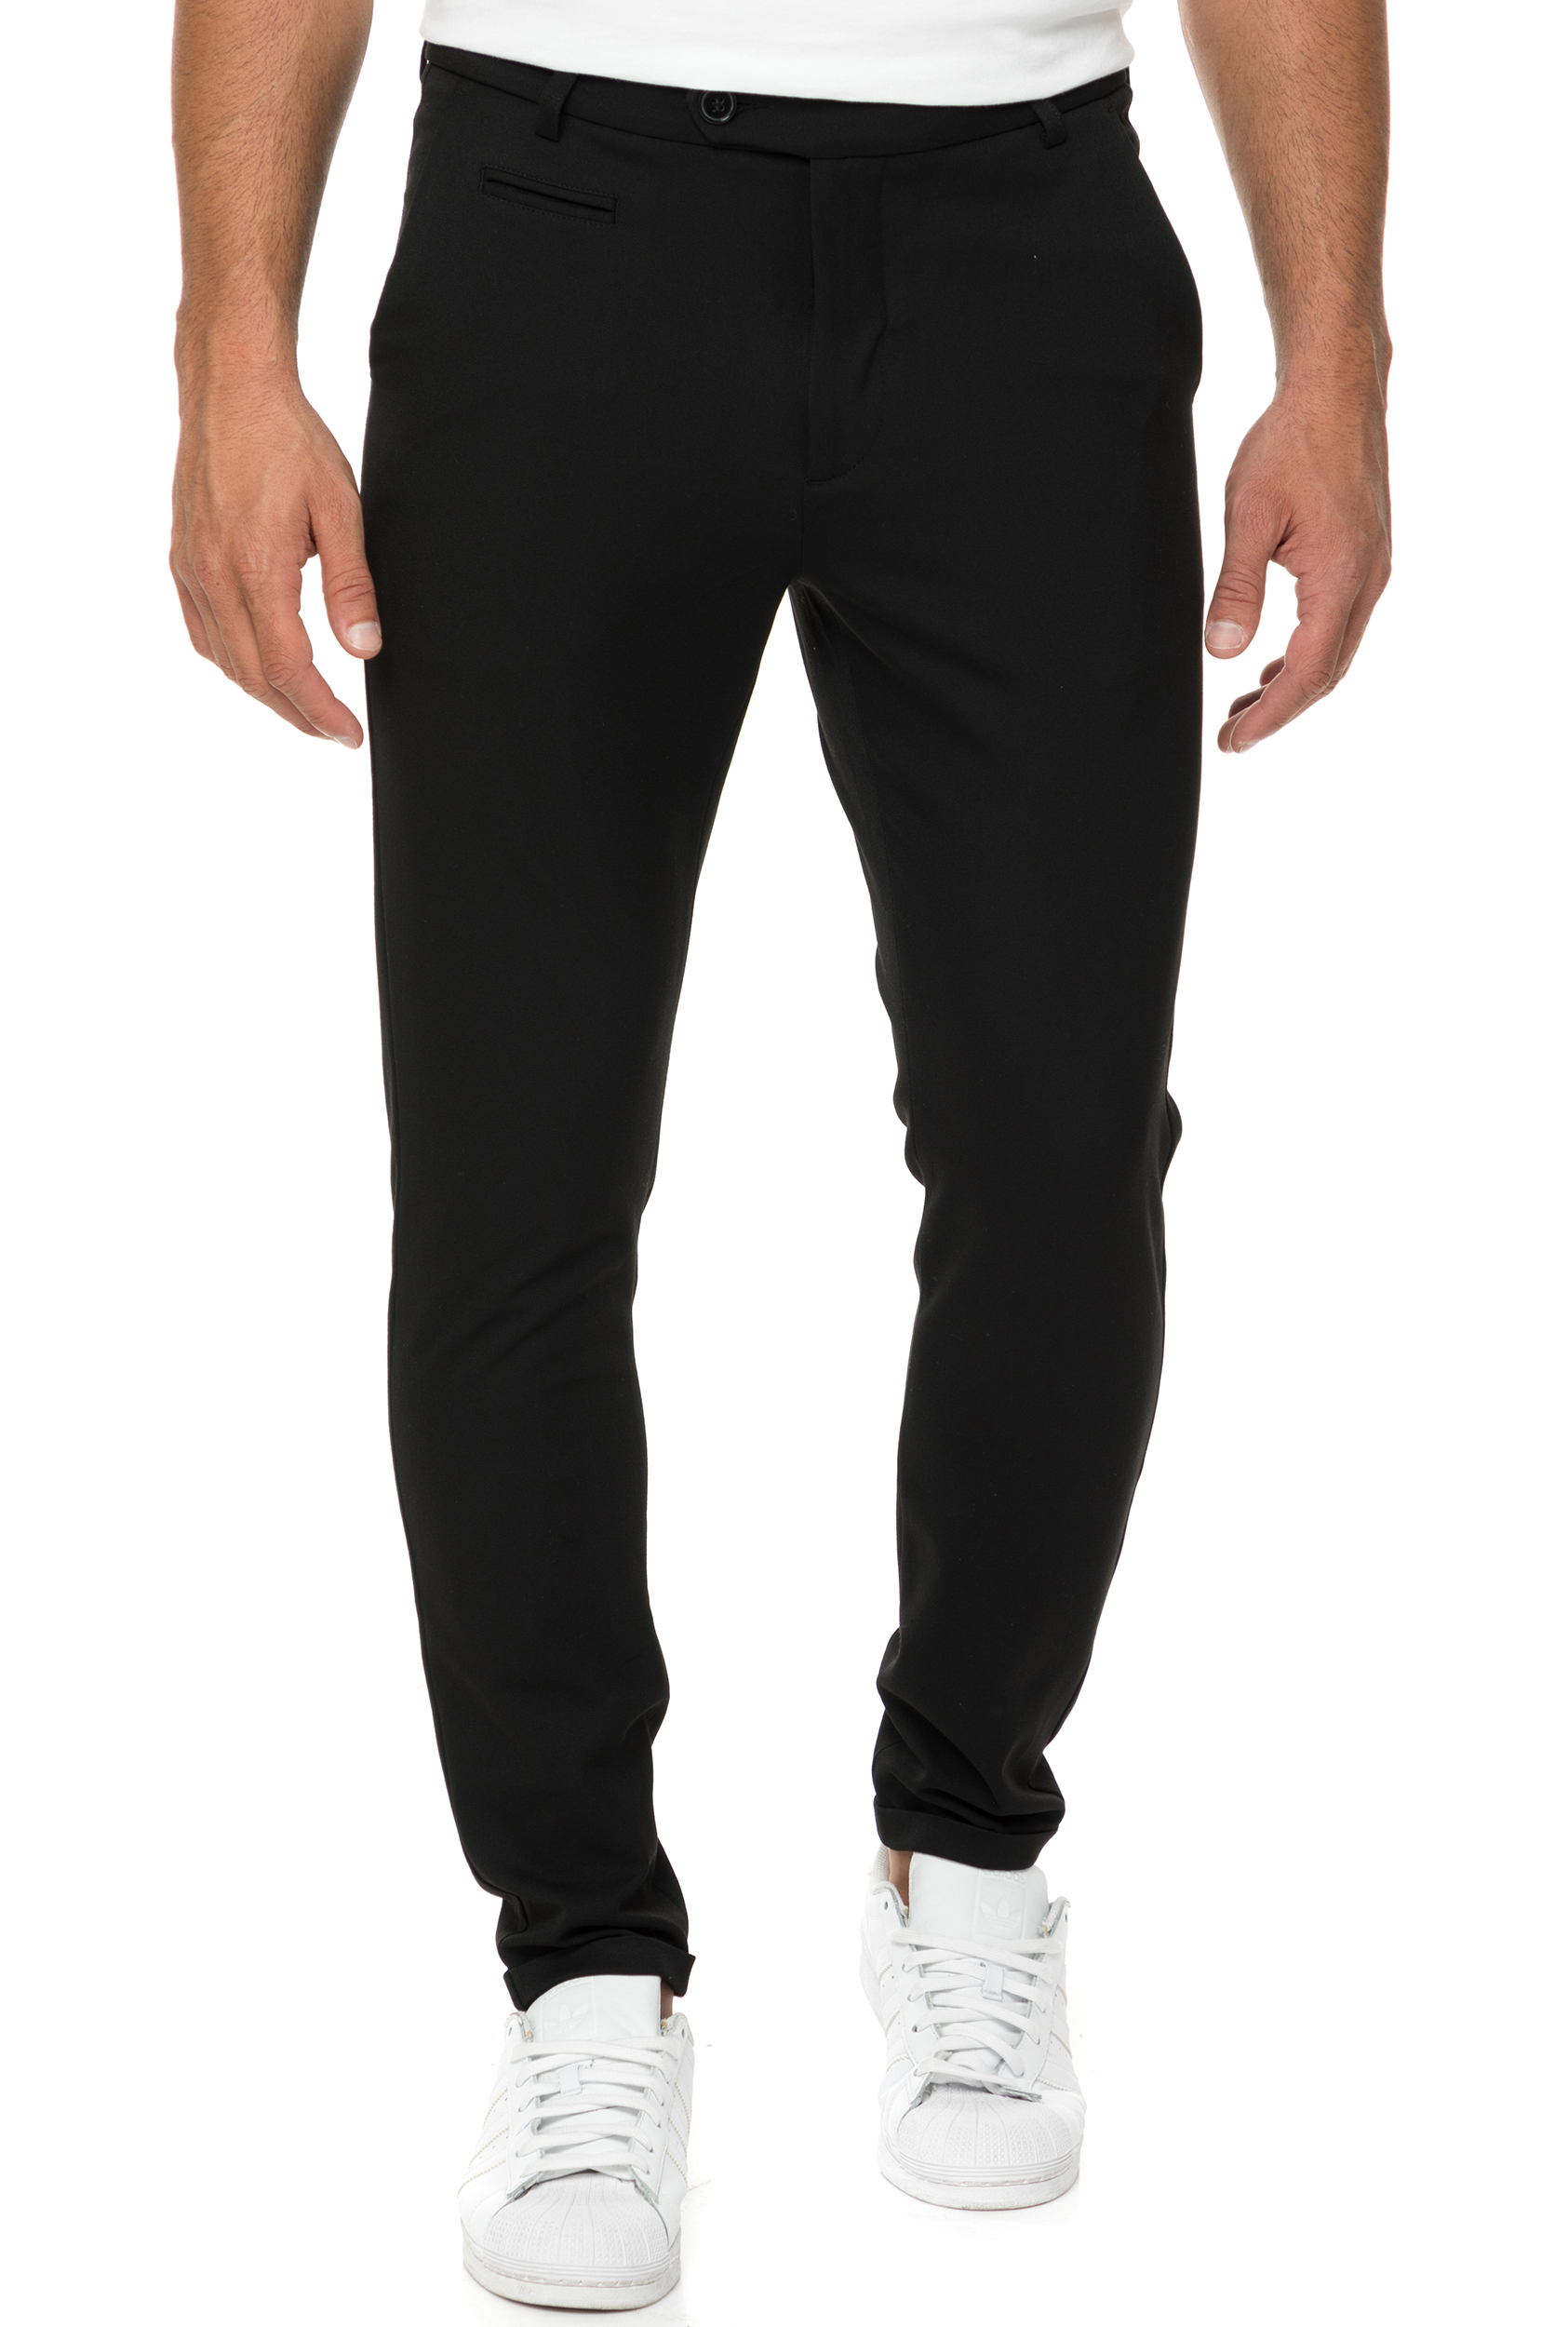 Ανδρικά/Ρούχα/Παντελόνια/Chinos LES DEUX - Ανδρικό chino παντελόνι Como μαύρο